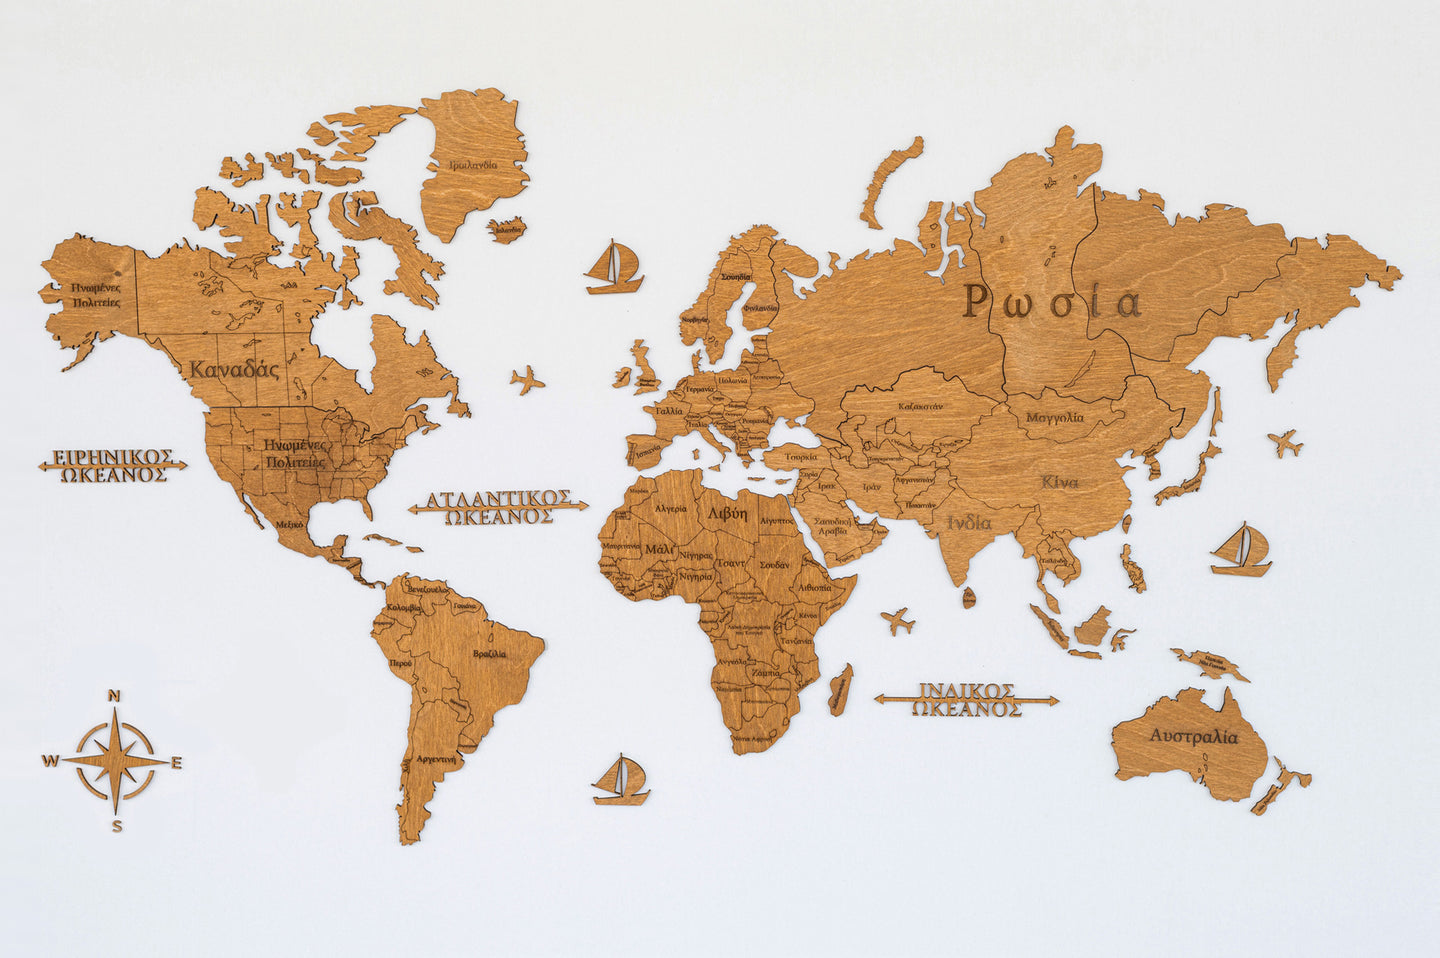 Ξύλινος παγκόσμιος χάρτης τοίχου ΔΡΥΣ - (115 x 65) / Με ονόματα